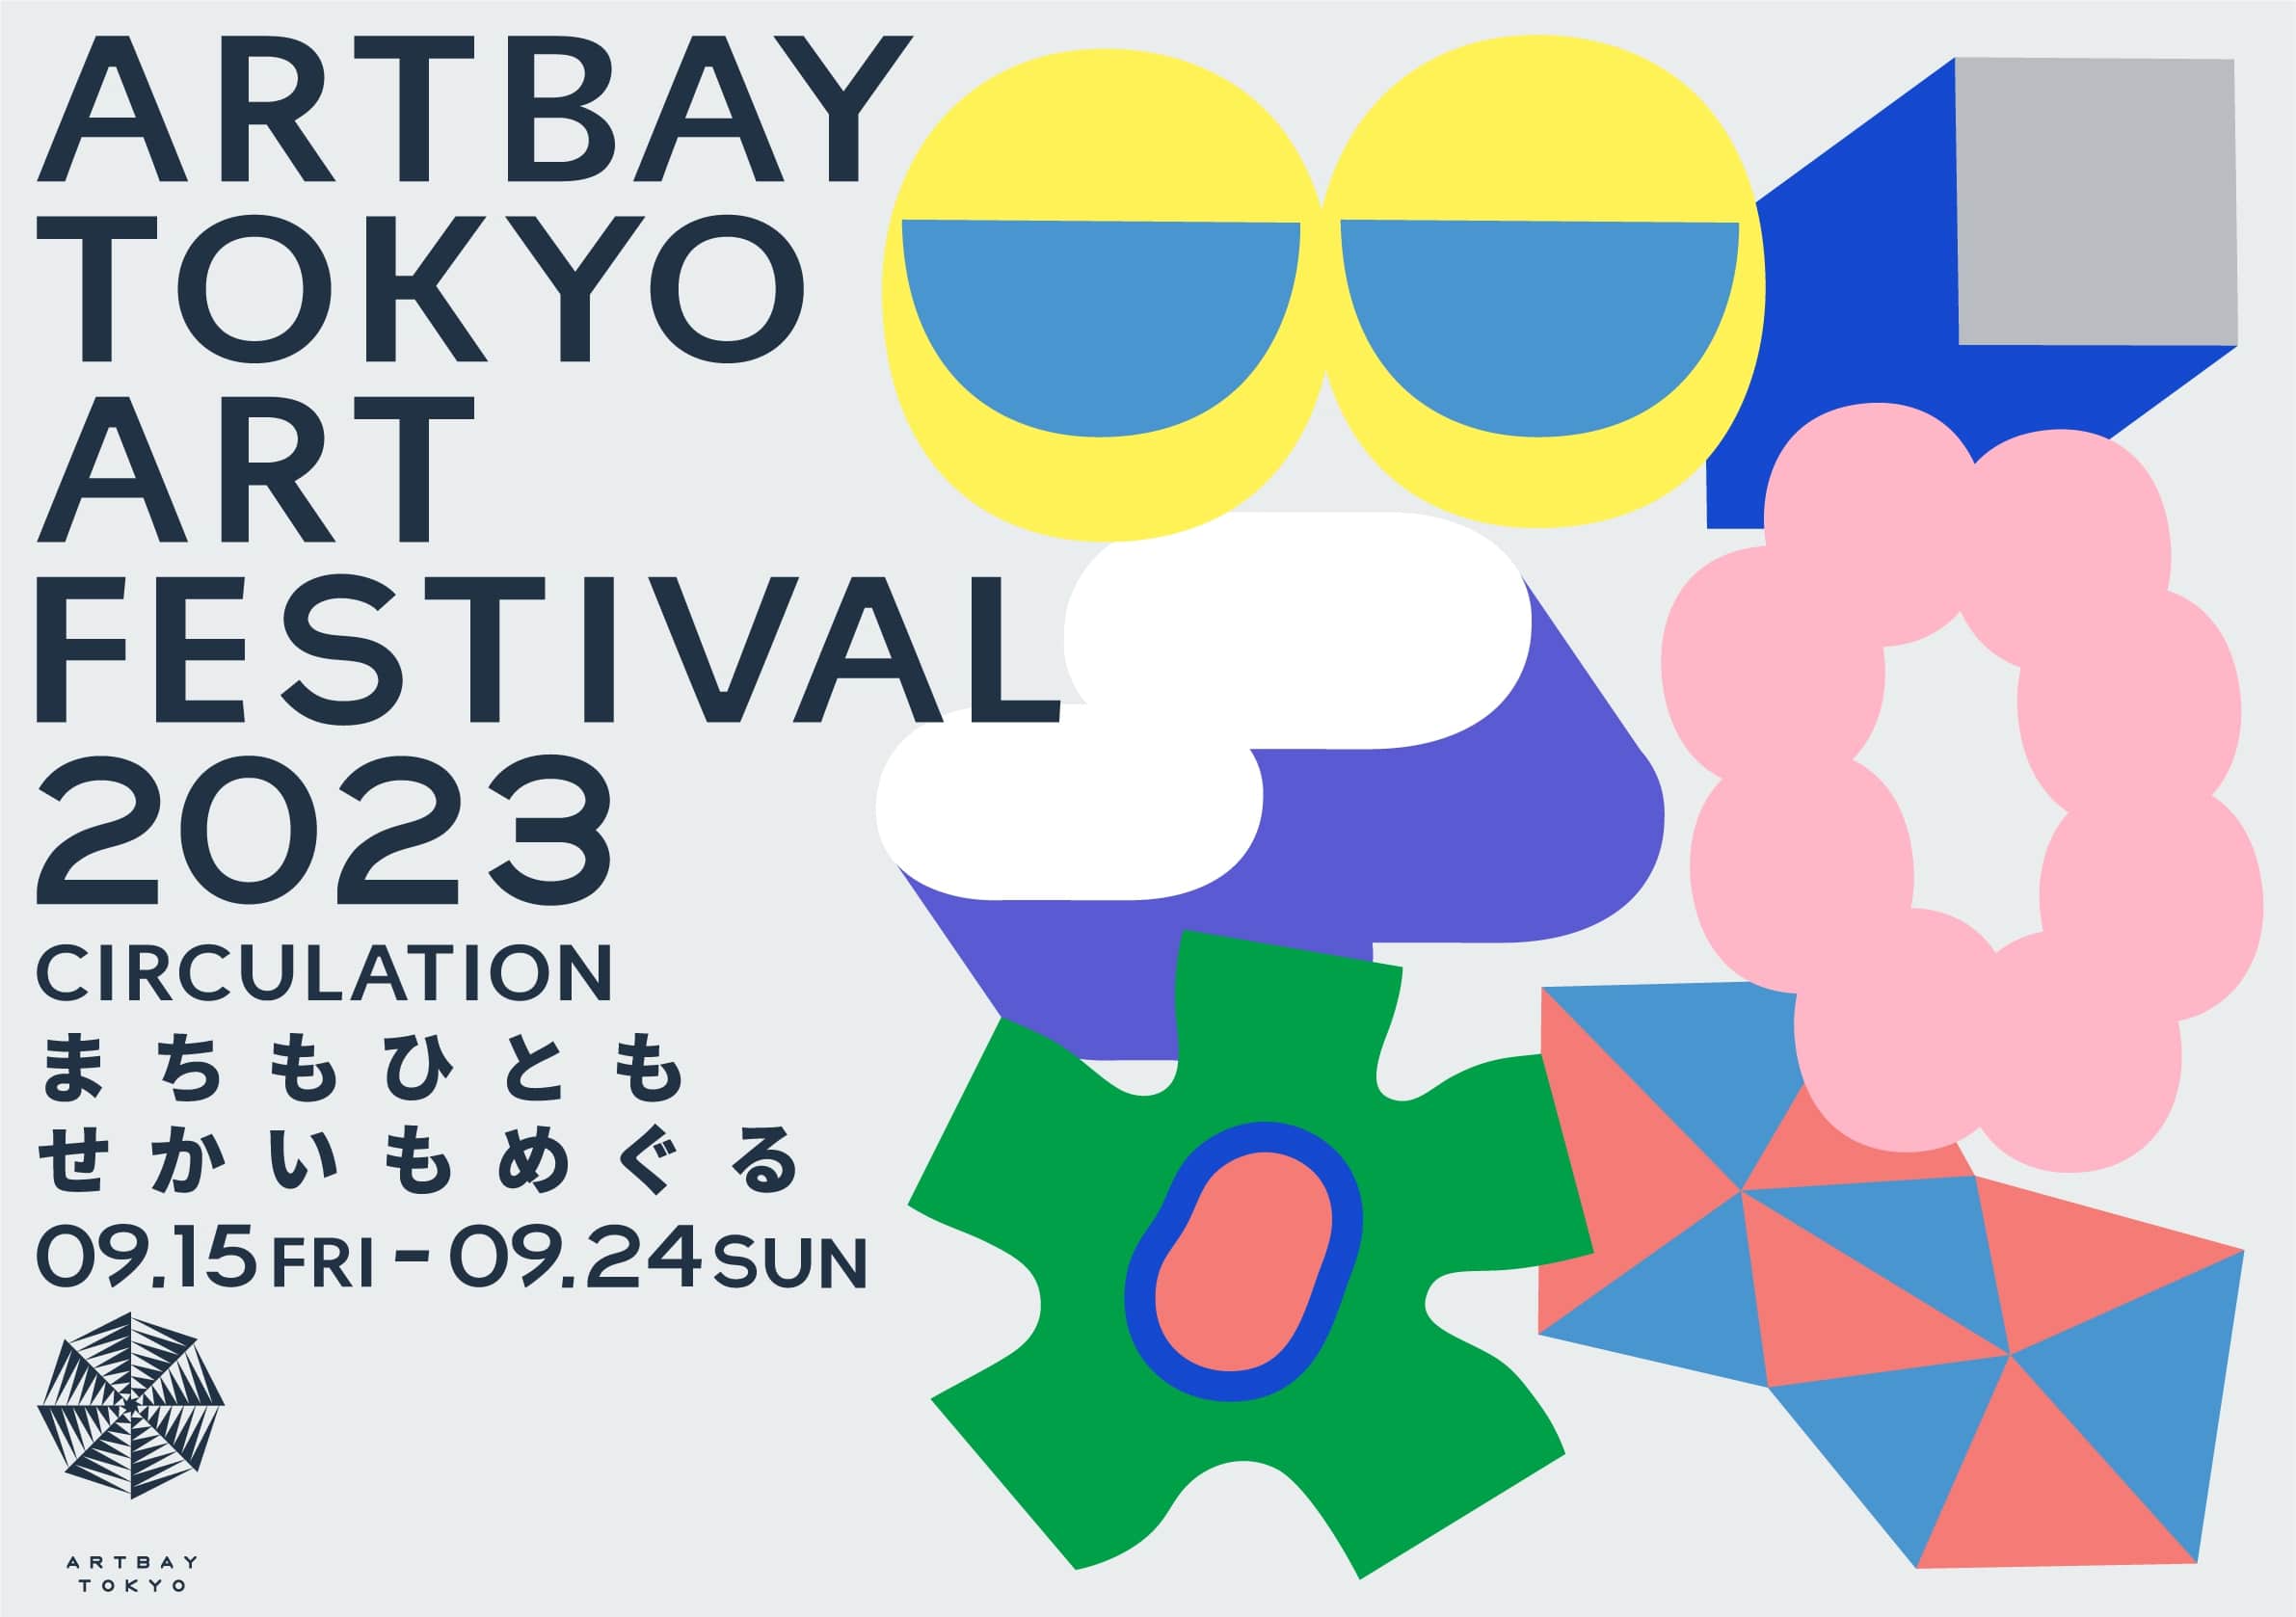 ARTBAY TOKYO アートフェスティバル2023～CIRCULATION～